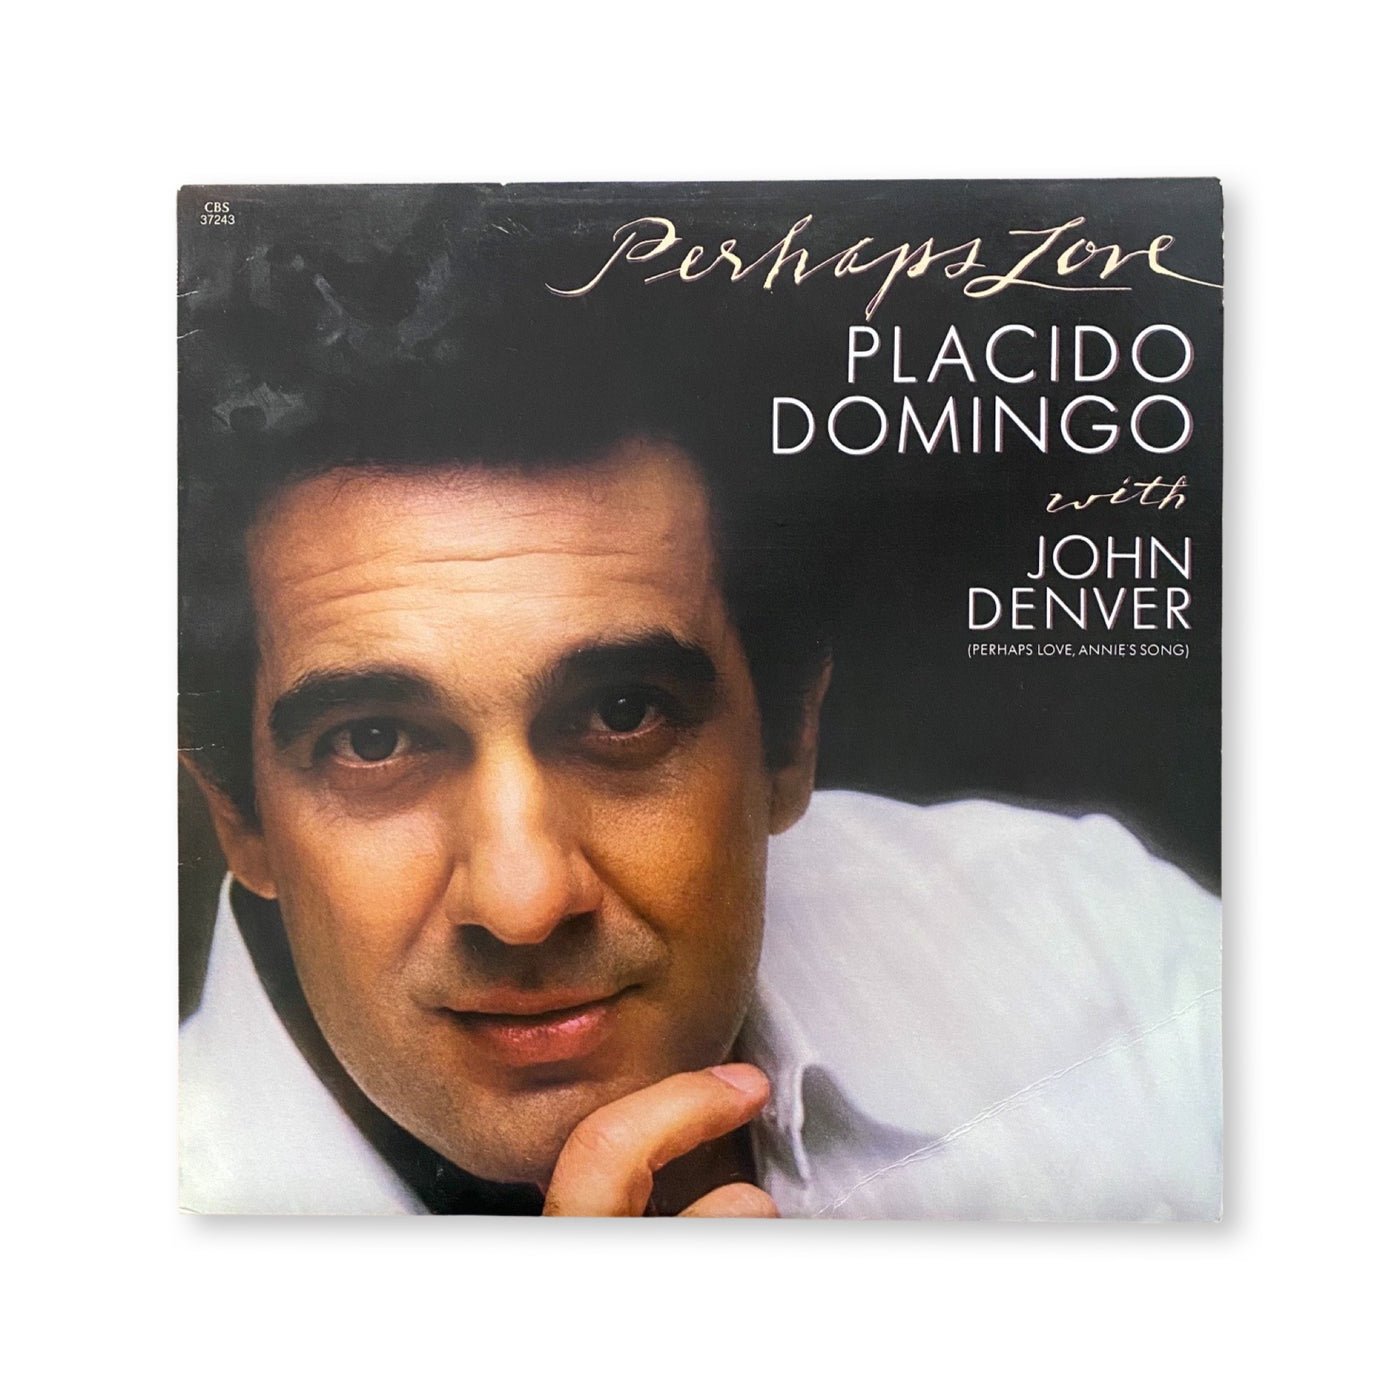 Placido Domingo - Placido Domingo with John Denver - Perhaps Love